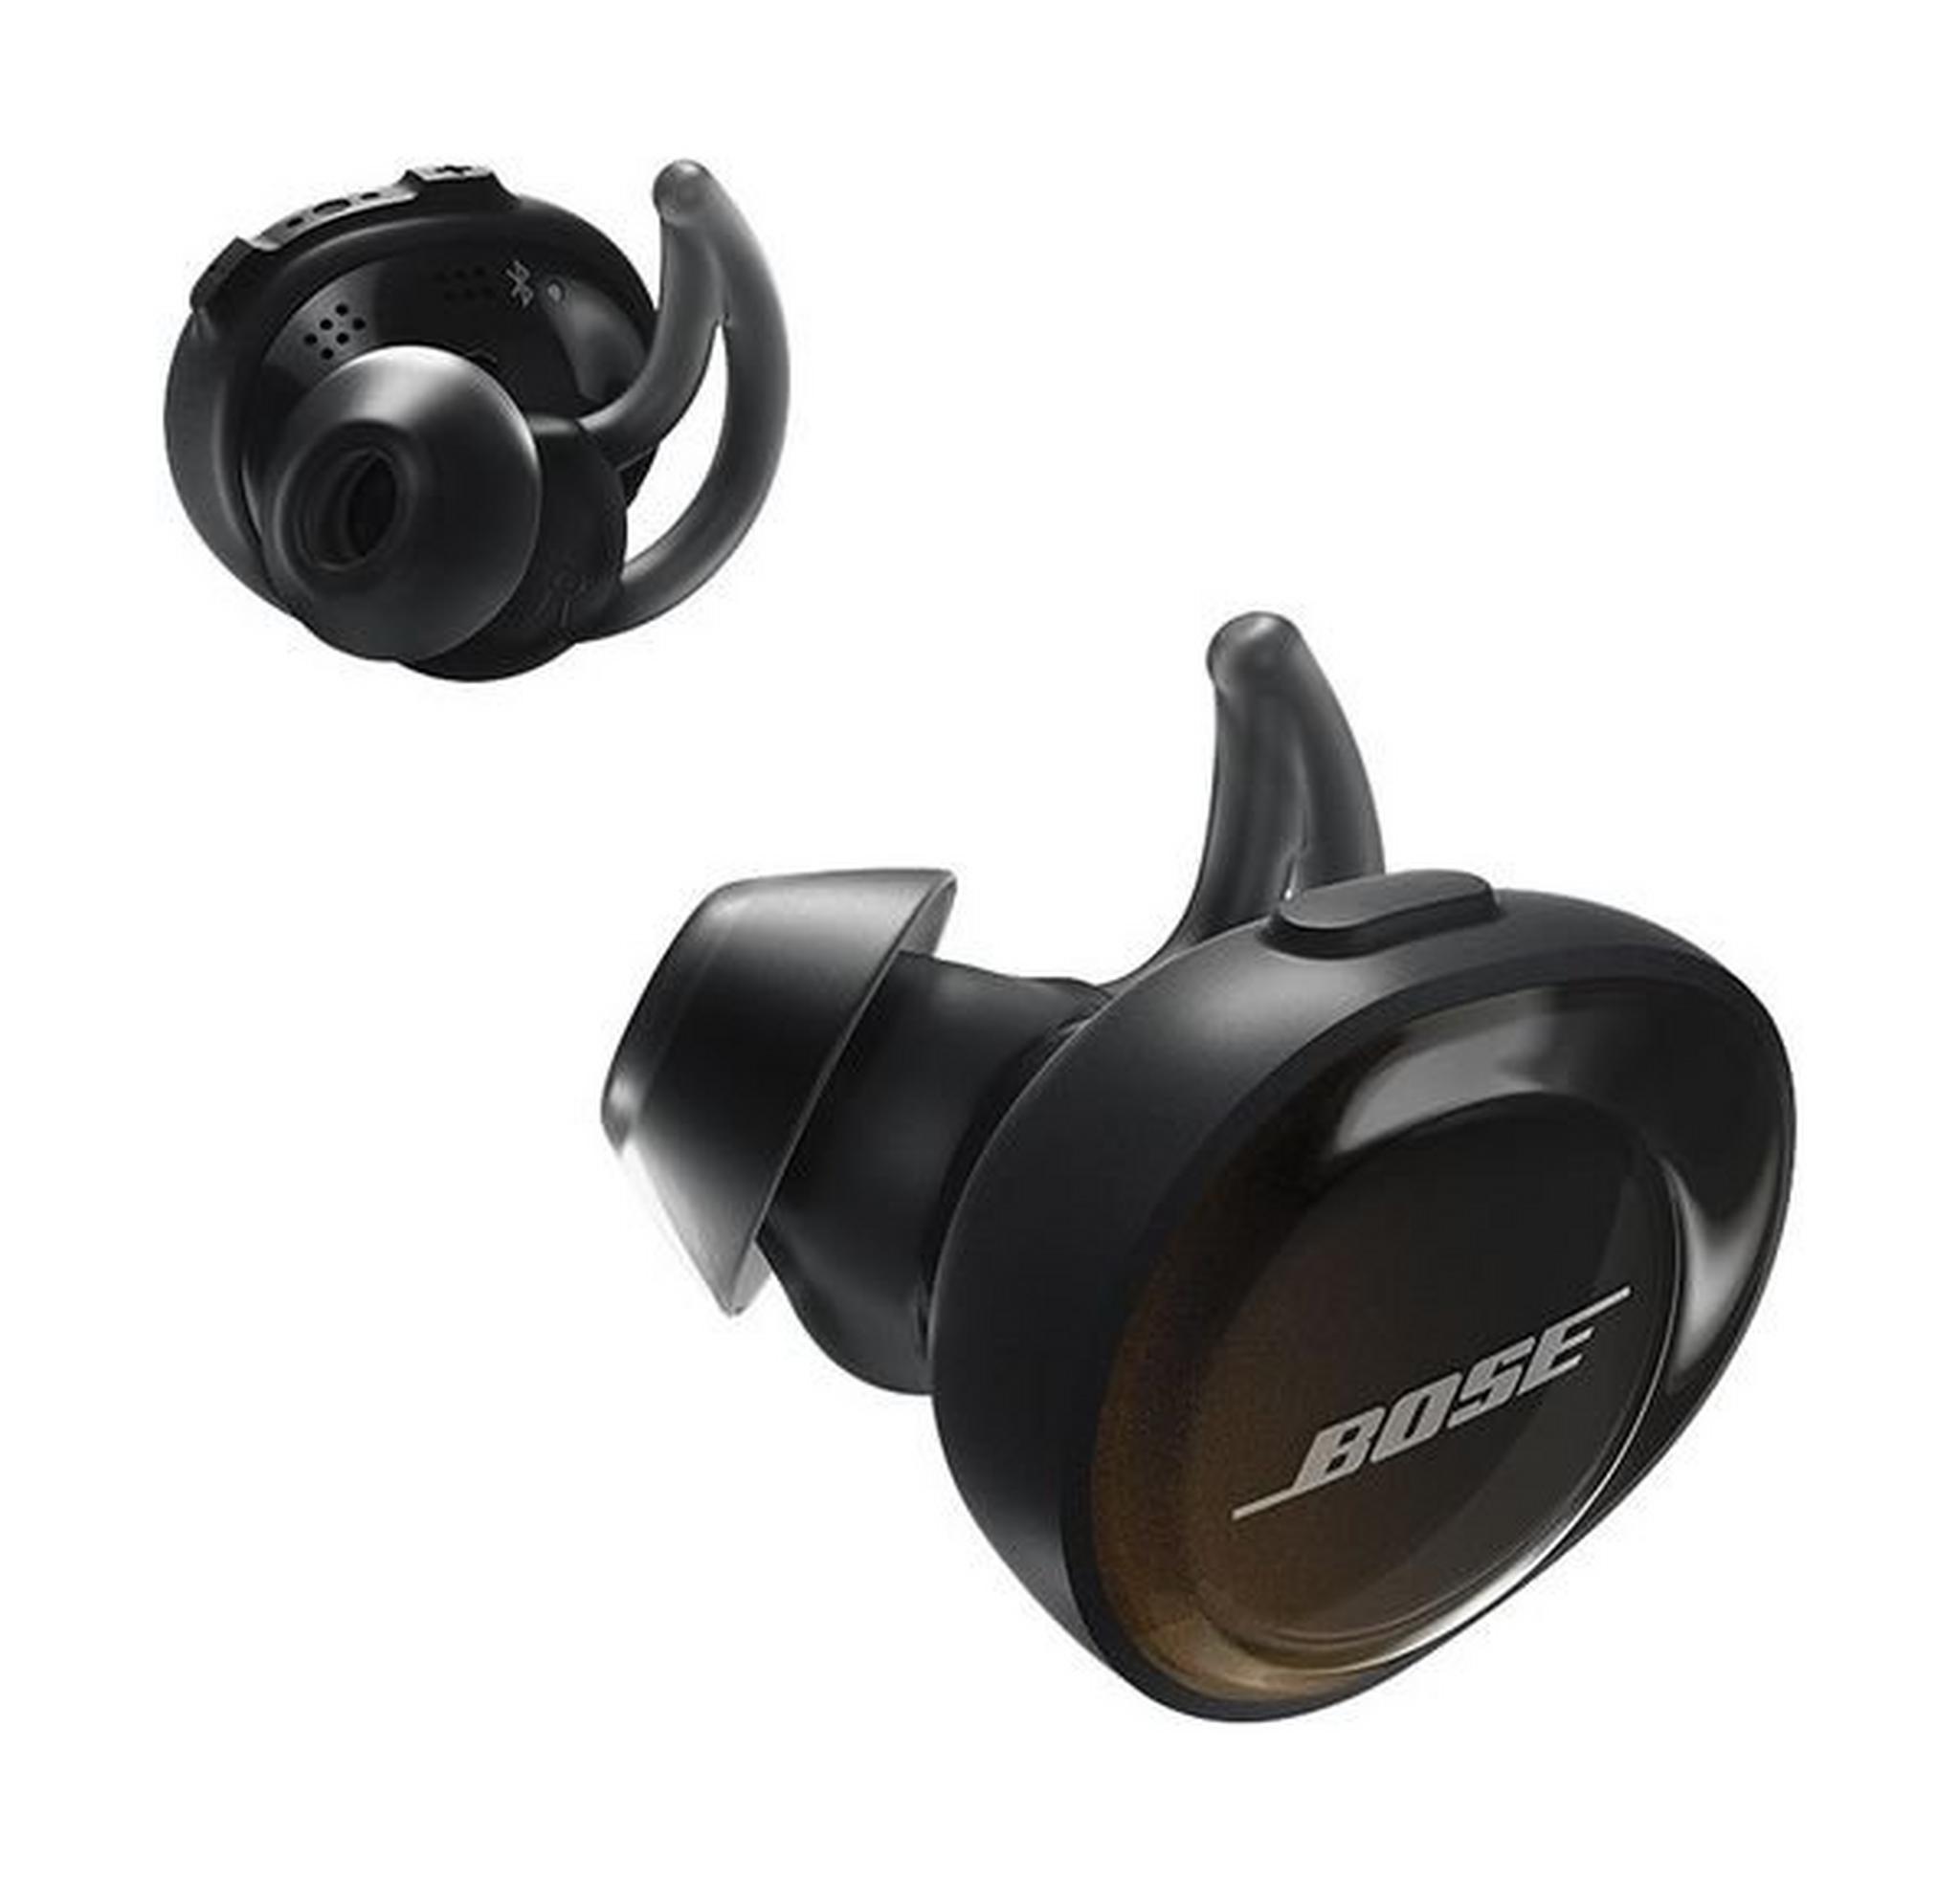 Bose SoundSport Free: True Wireless Earbuds - Black